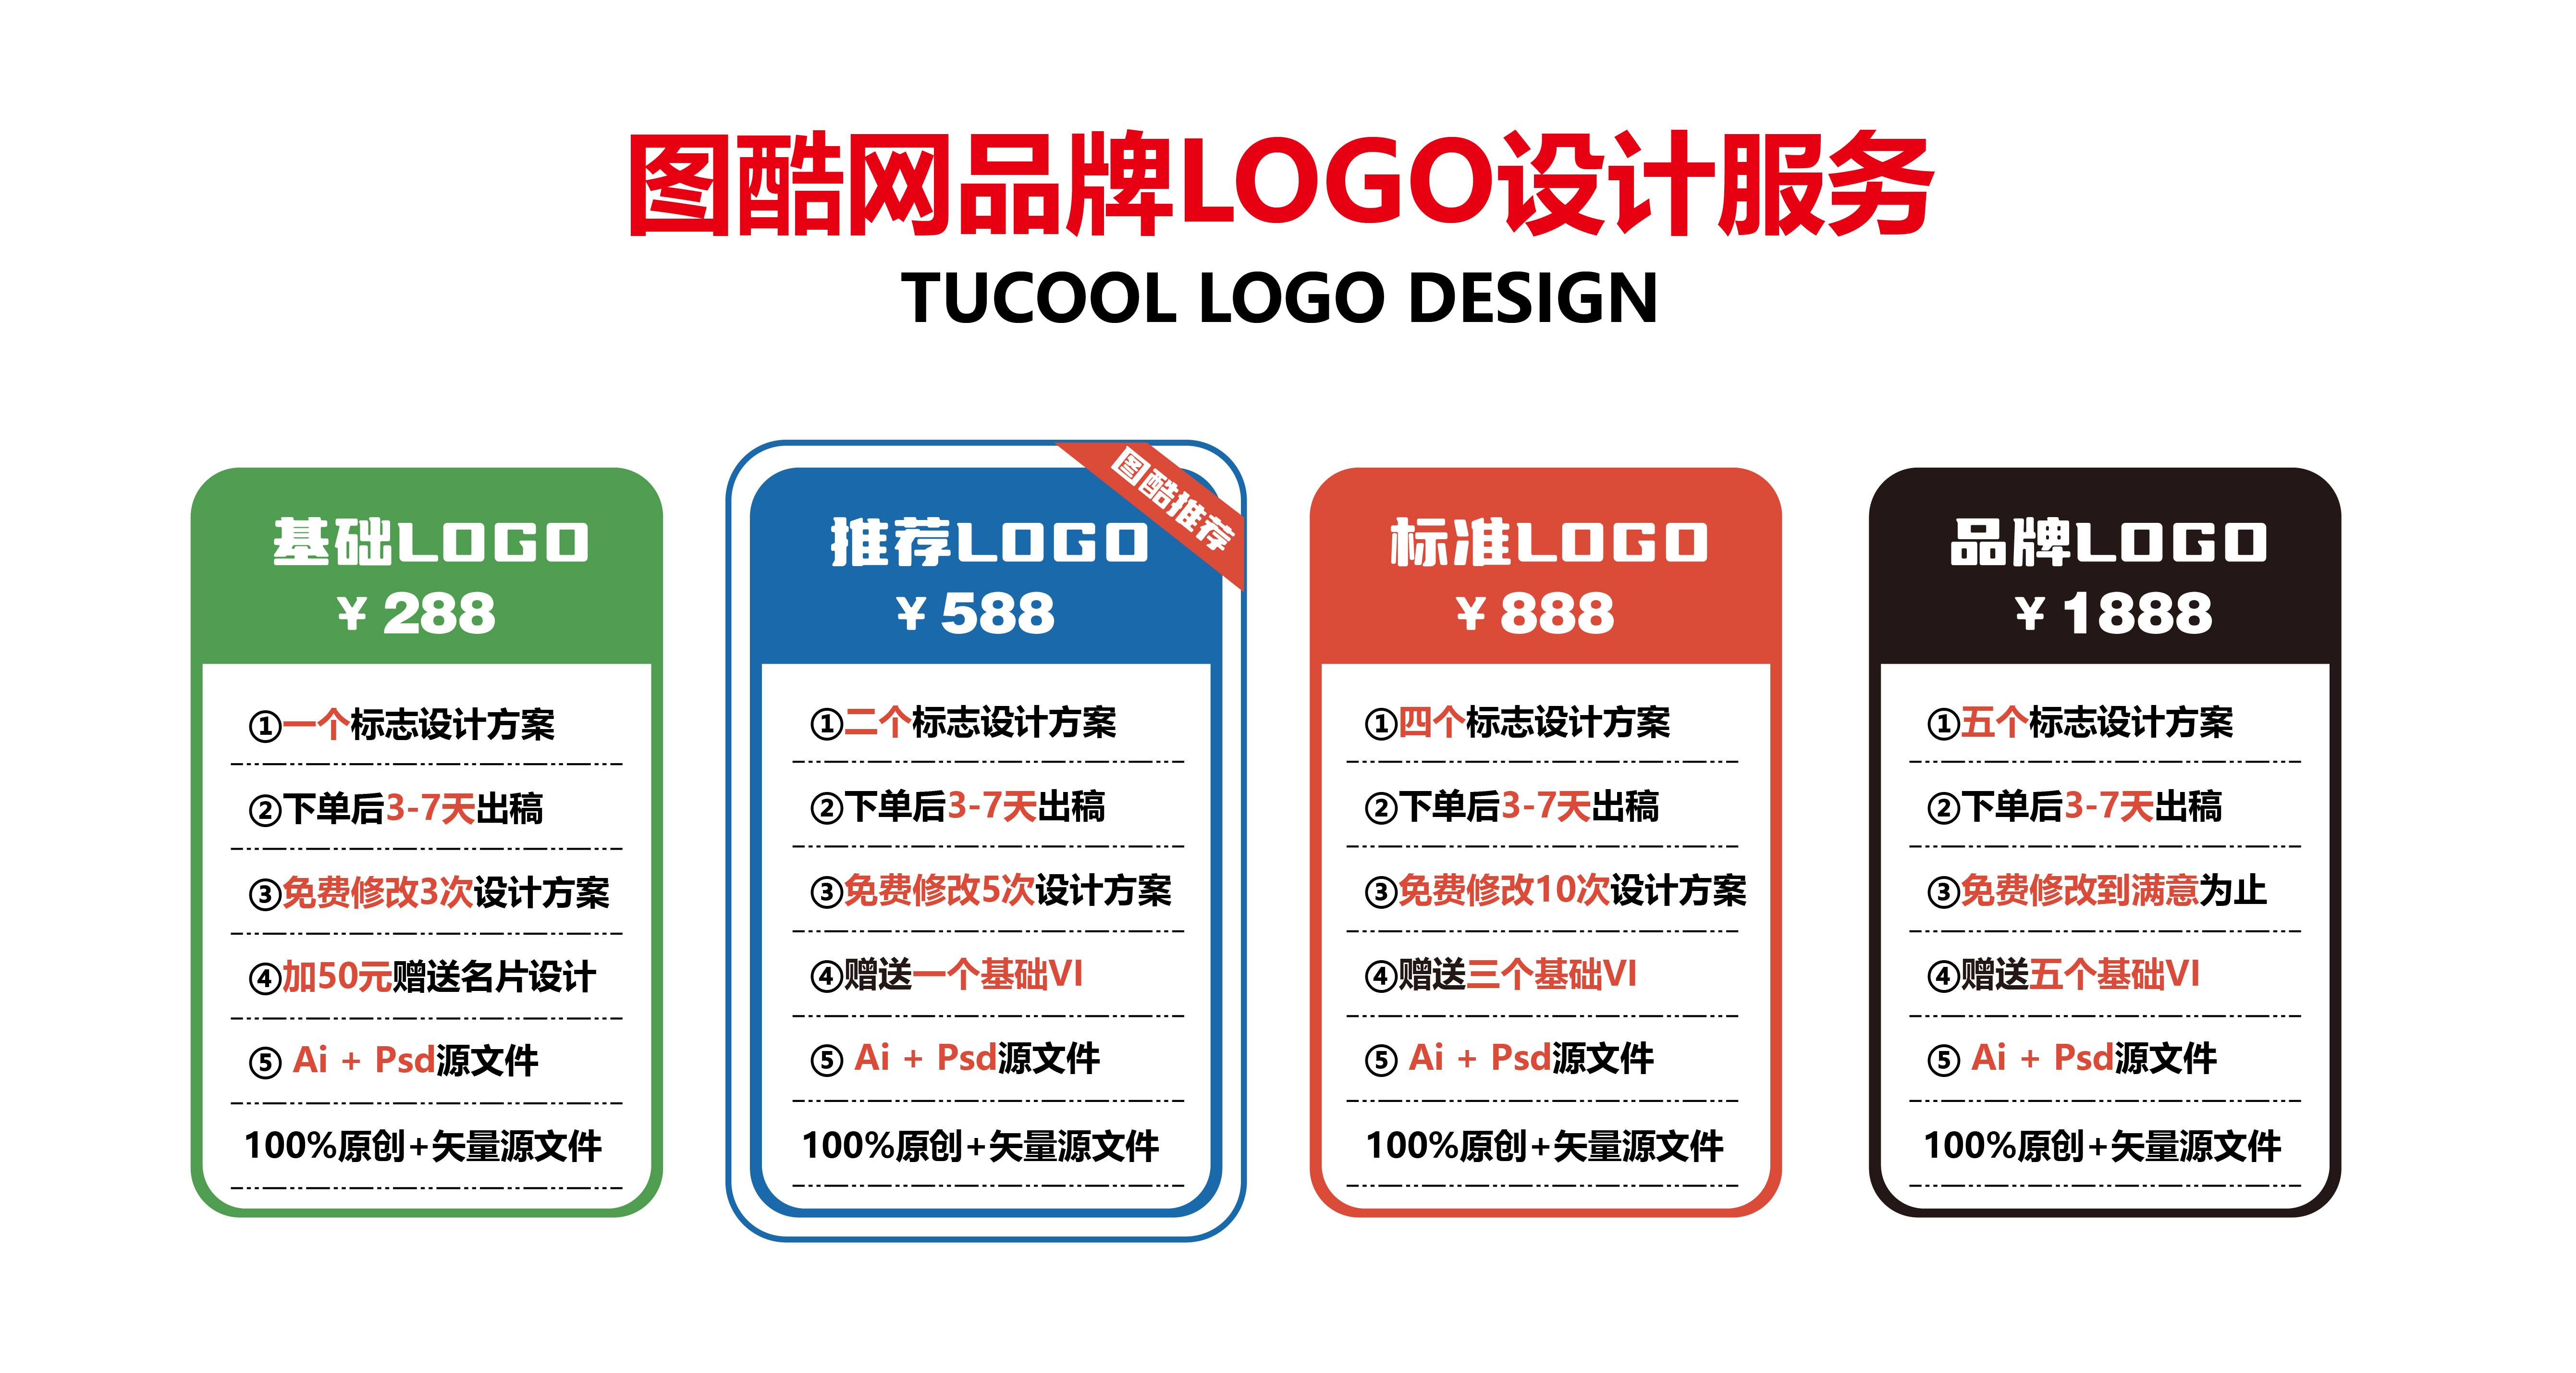 LOGO设计服务，可申请版权，7天左右下证！